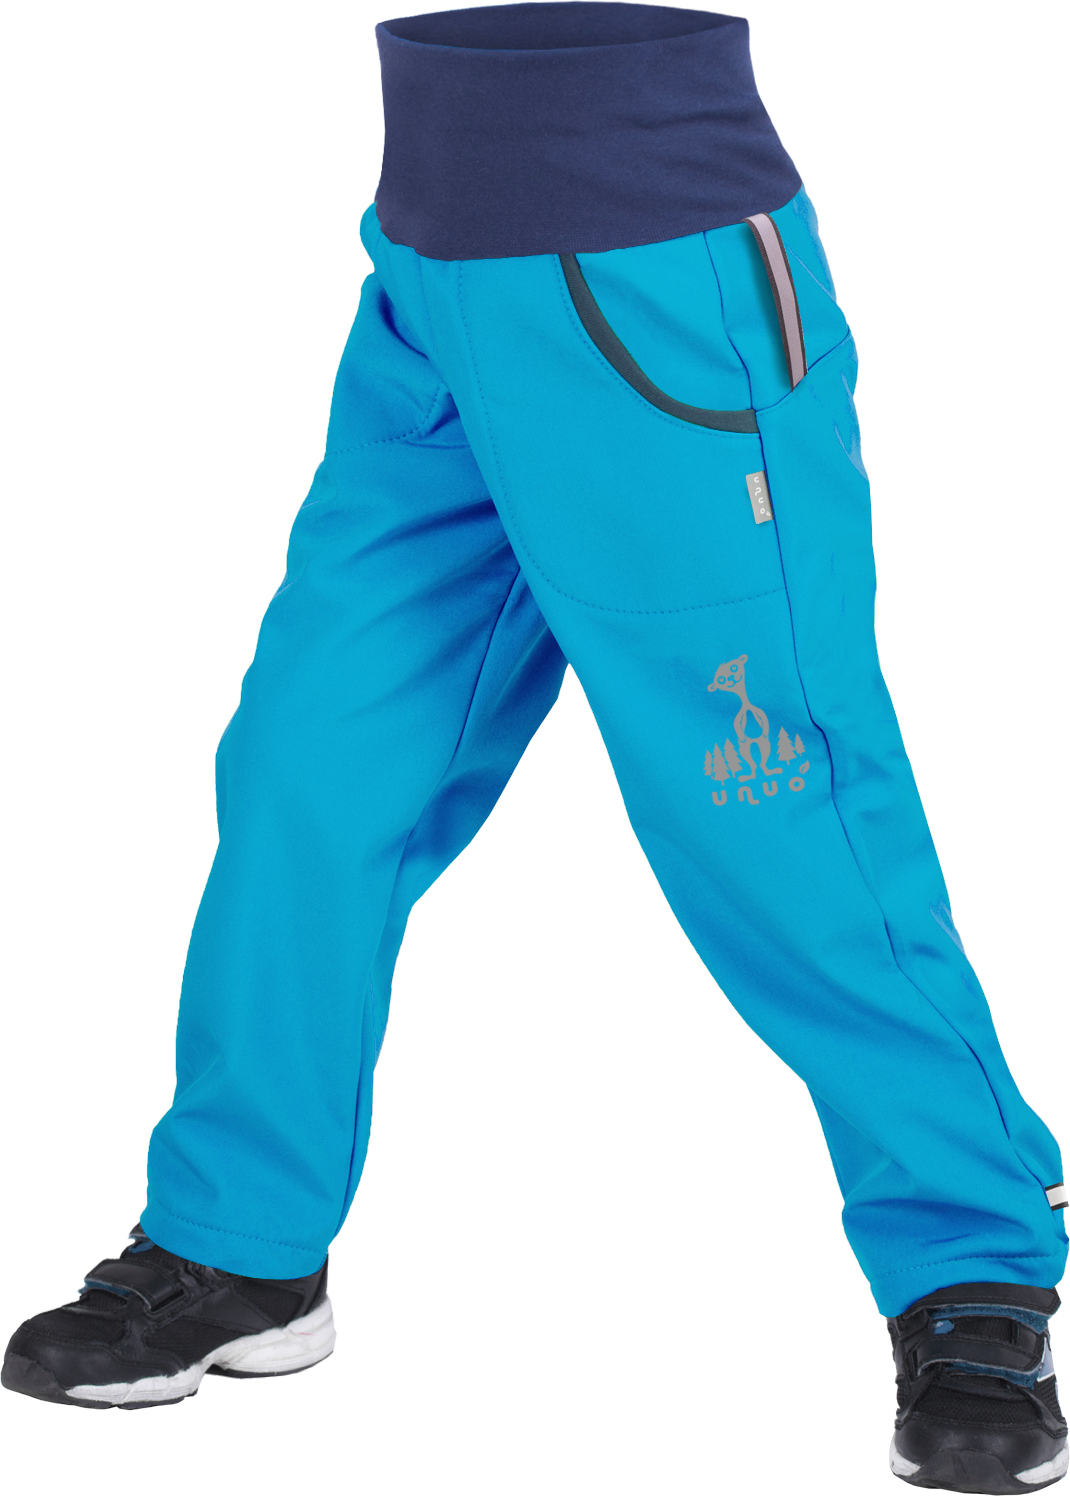 Dětské softshellové kalhoty UNUO s fleecem Tyrkysové + reflexní obrázek Evžen (Softshell kids trousers) Velikost: 98/104